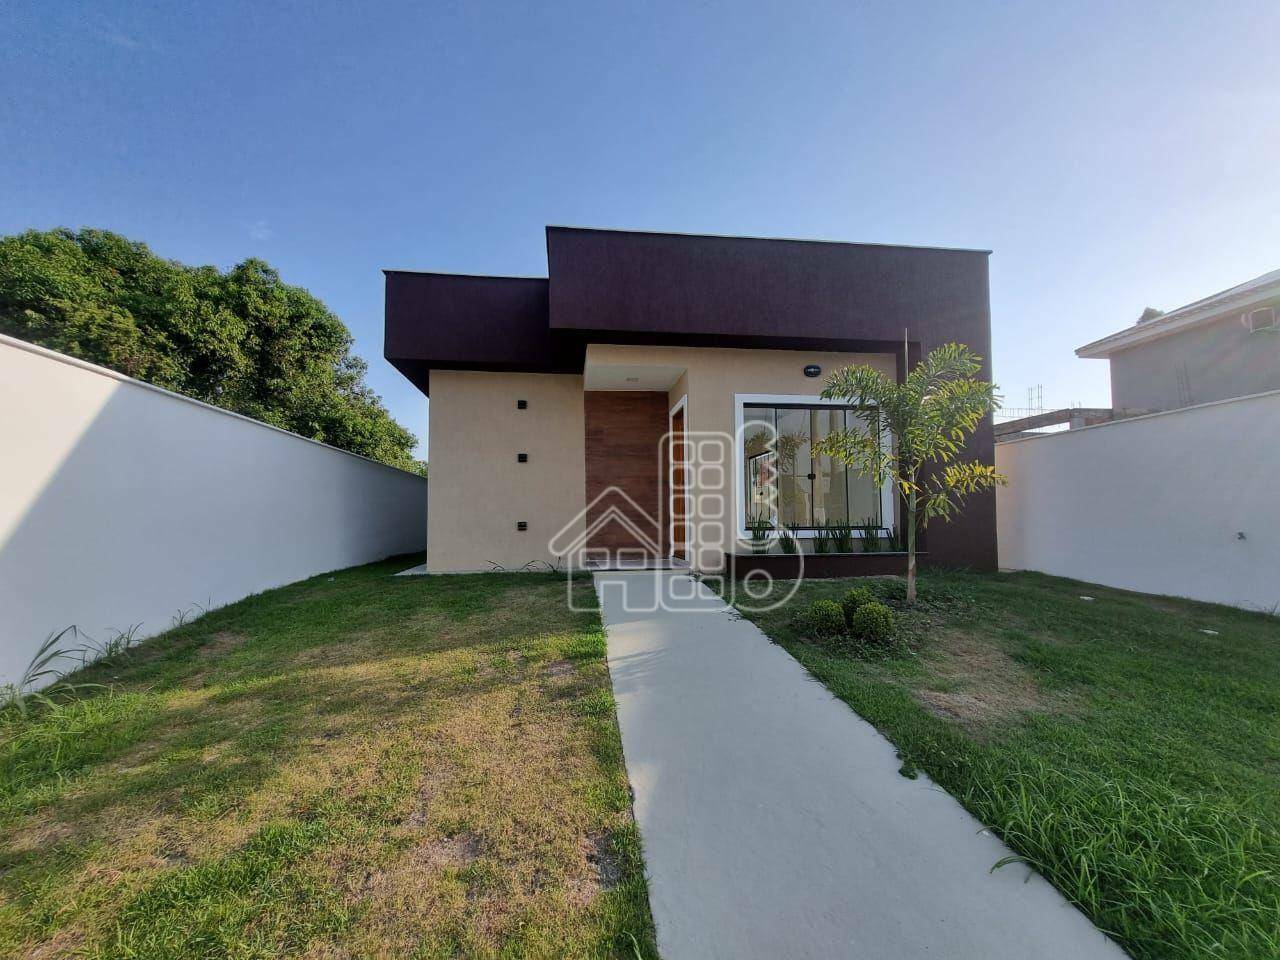 Casa com 3 dormitórios à venda, 180 m² por R$ 520.000,01 - Pindobas - Maricá/RJ